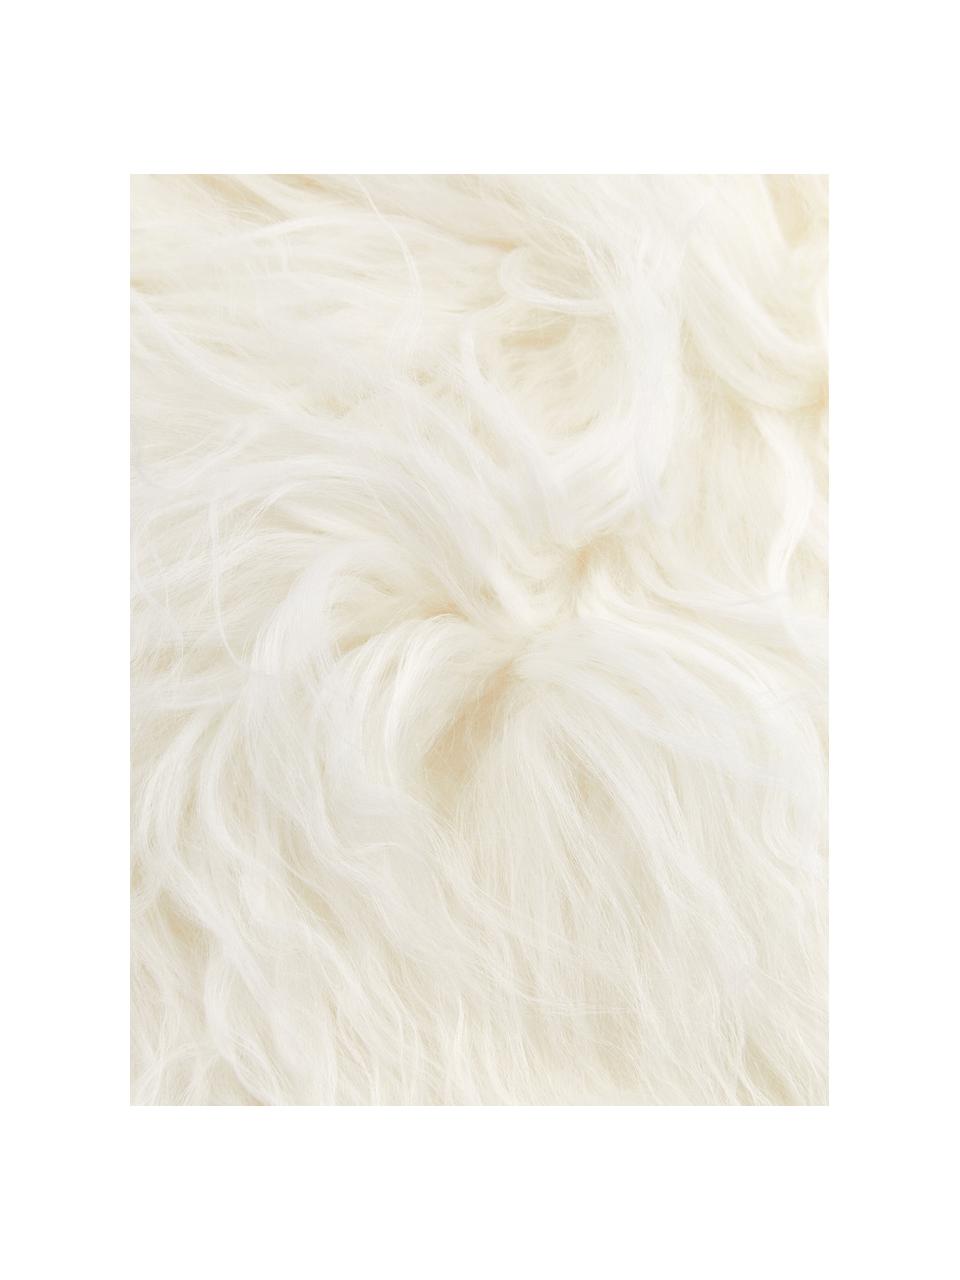 Federa arredo in pelle di agnello a pelo lungo riccio bianco Ella, Retro: 100% poliestere, Bianco, Larg. 40 x Lung. 40 cm